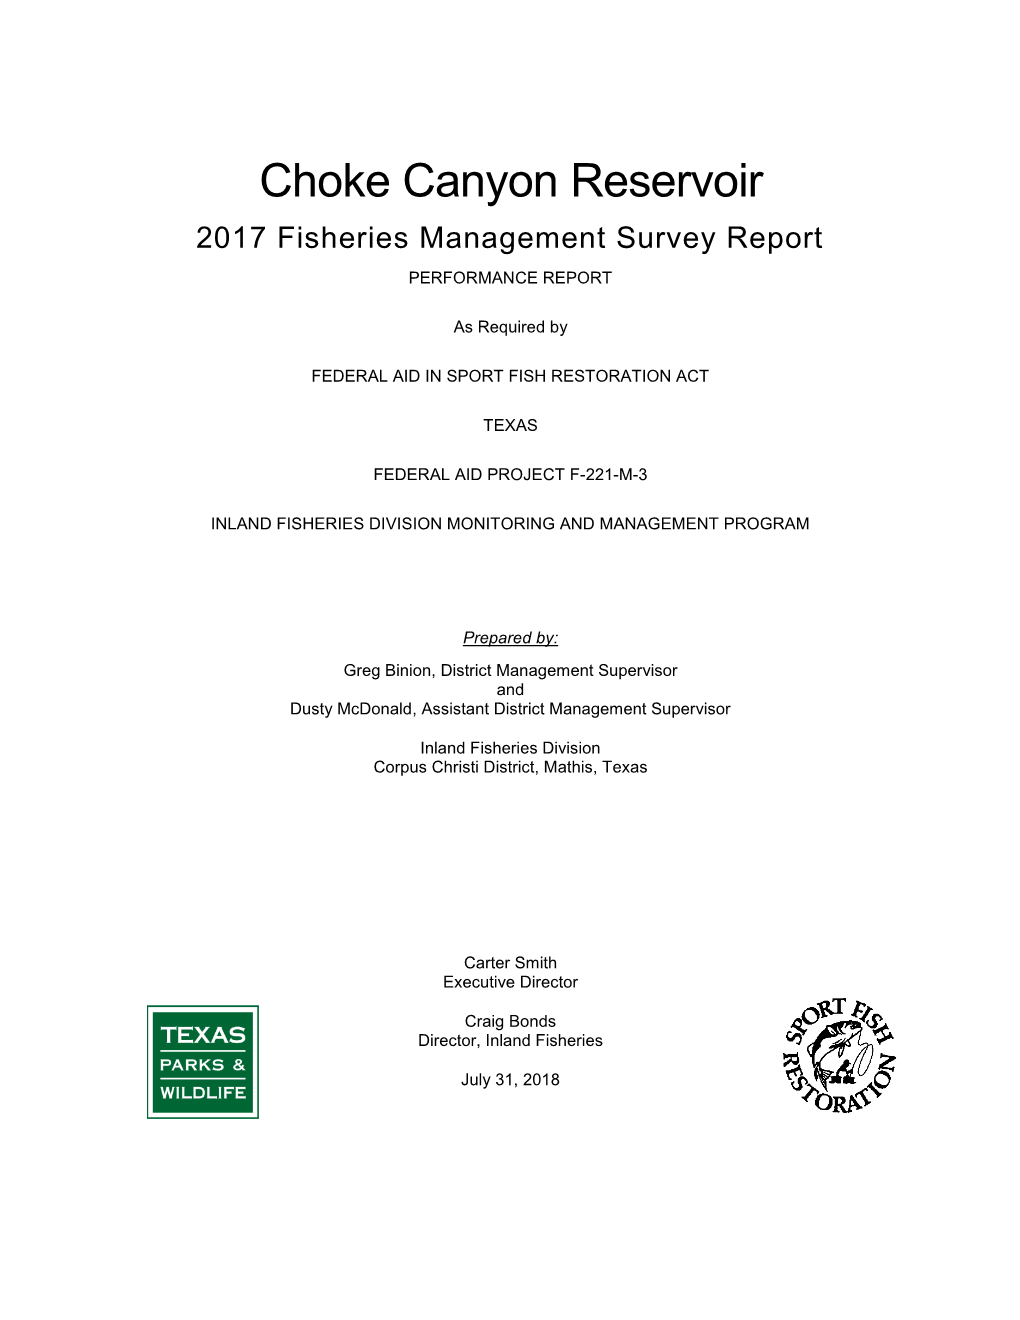 Choke Canyon Reservoir 2017 Survey Report